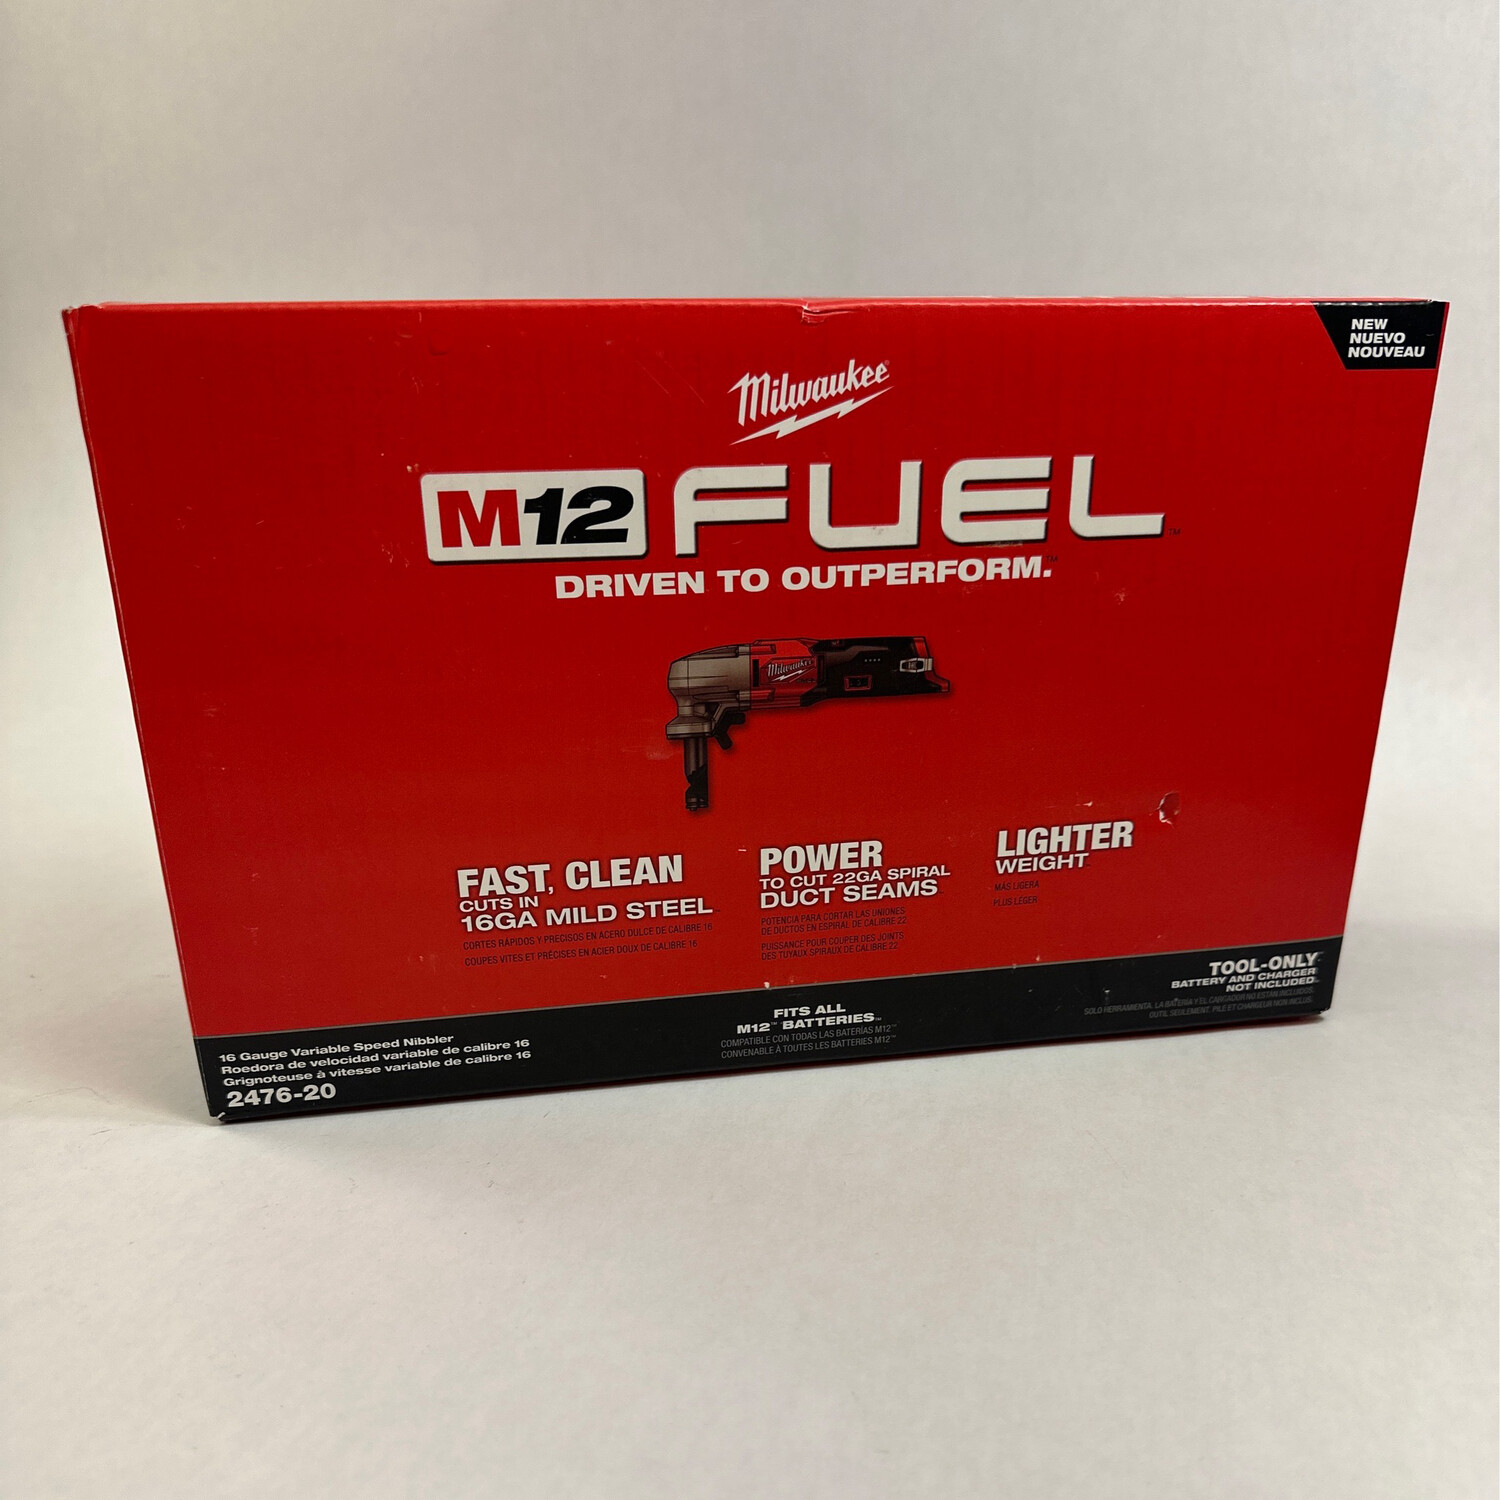 Milwaukee M12 Fuel 16 Gauge Variable Speed Nibbler, 2476-20